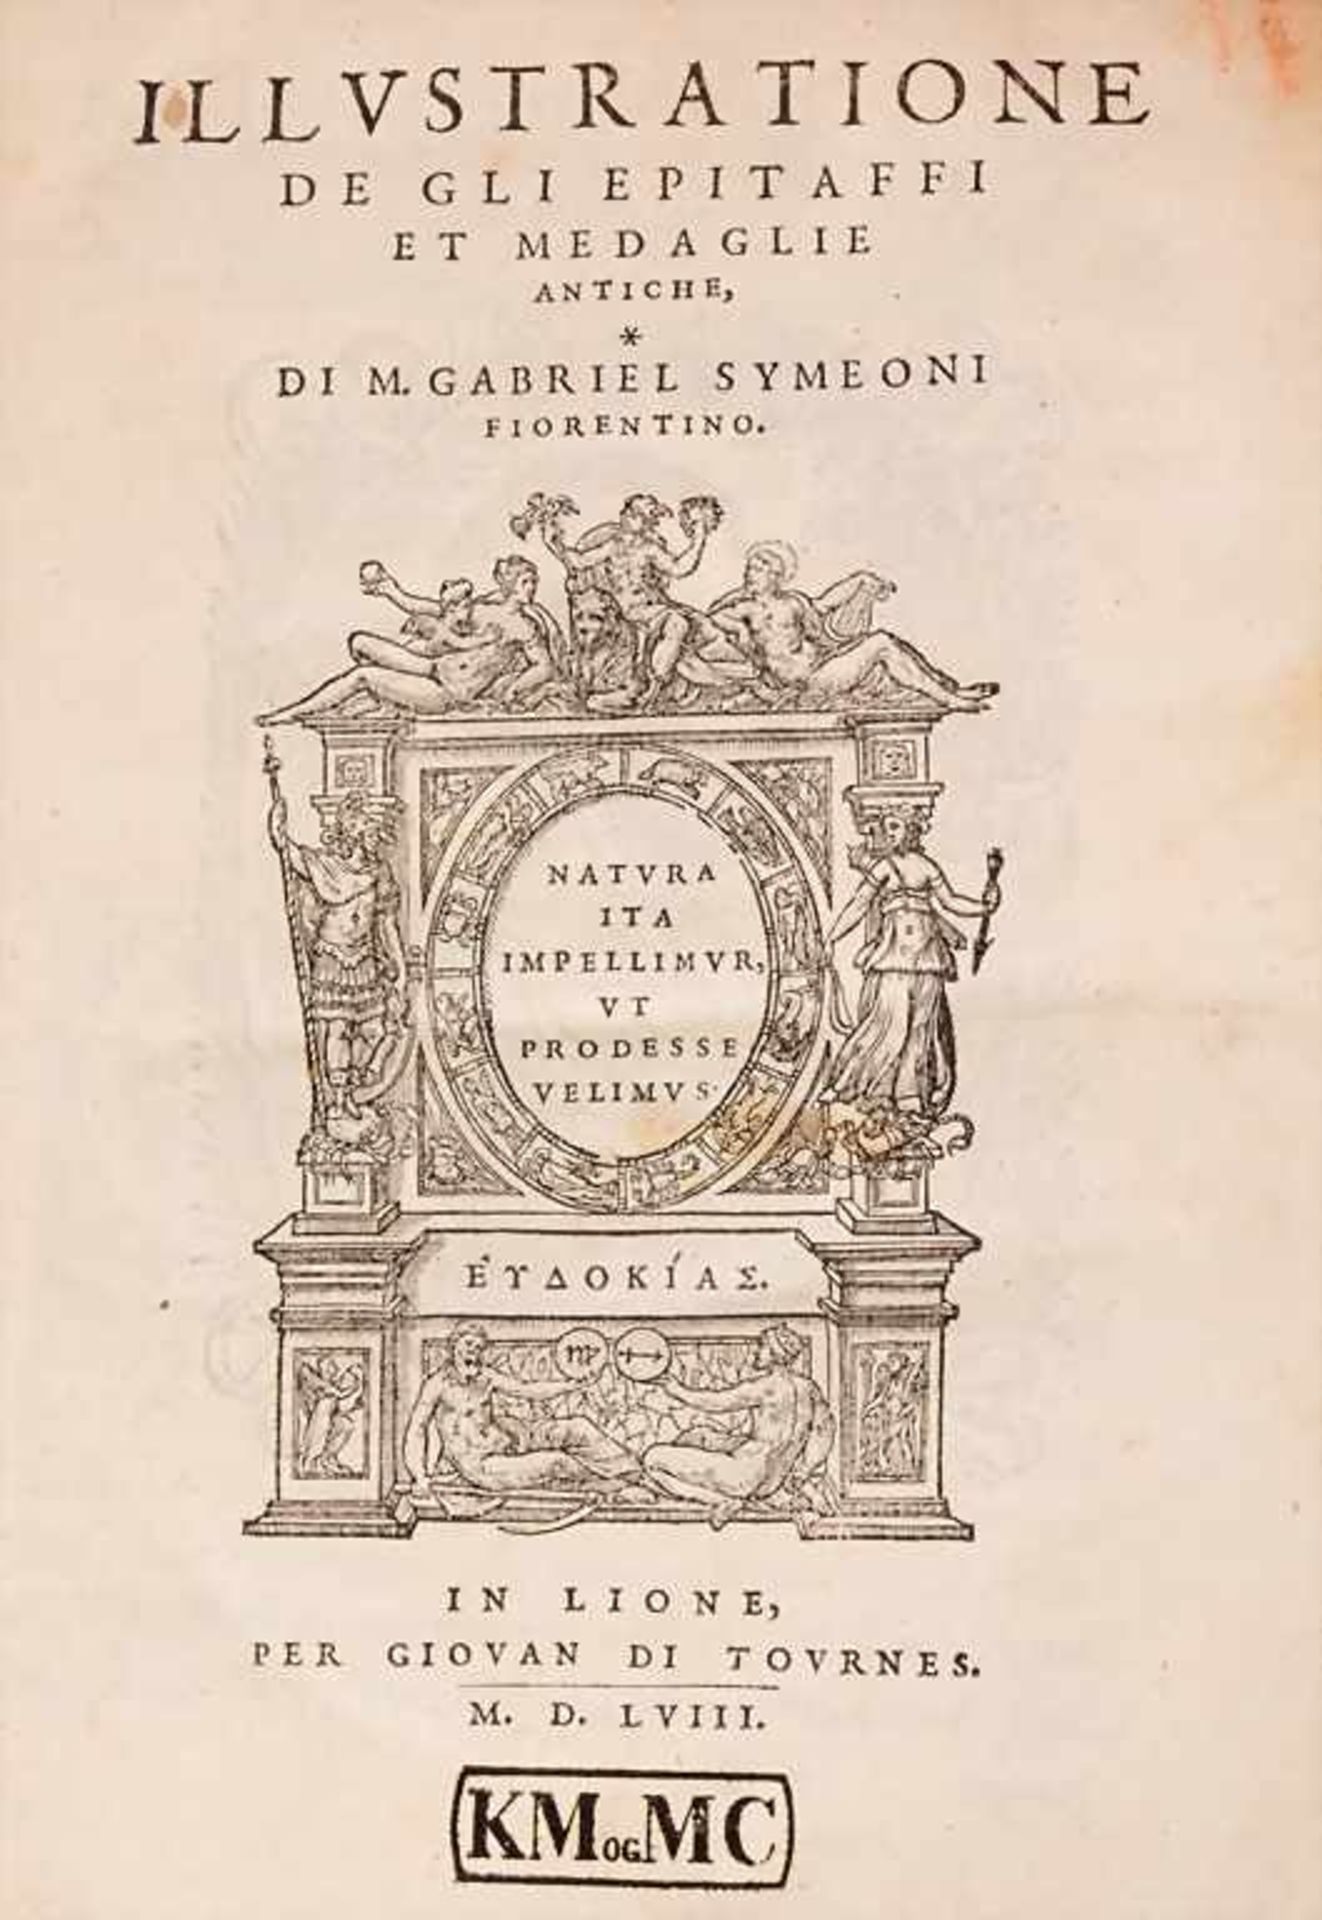 M. Gabriel Symeoni, 'Illustratione de gli Epitaffi et Medaglie Antiche'Untertitel: Natura ita